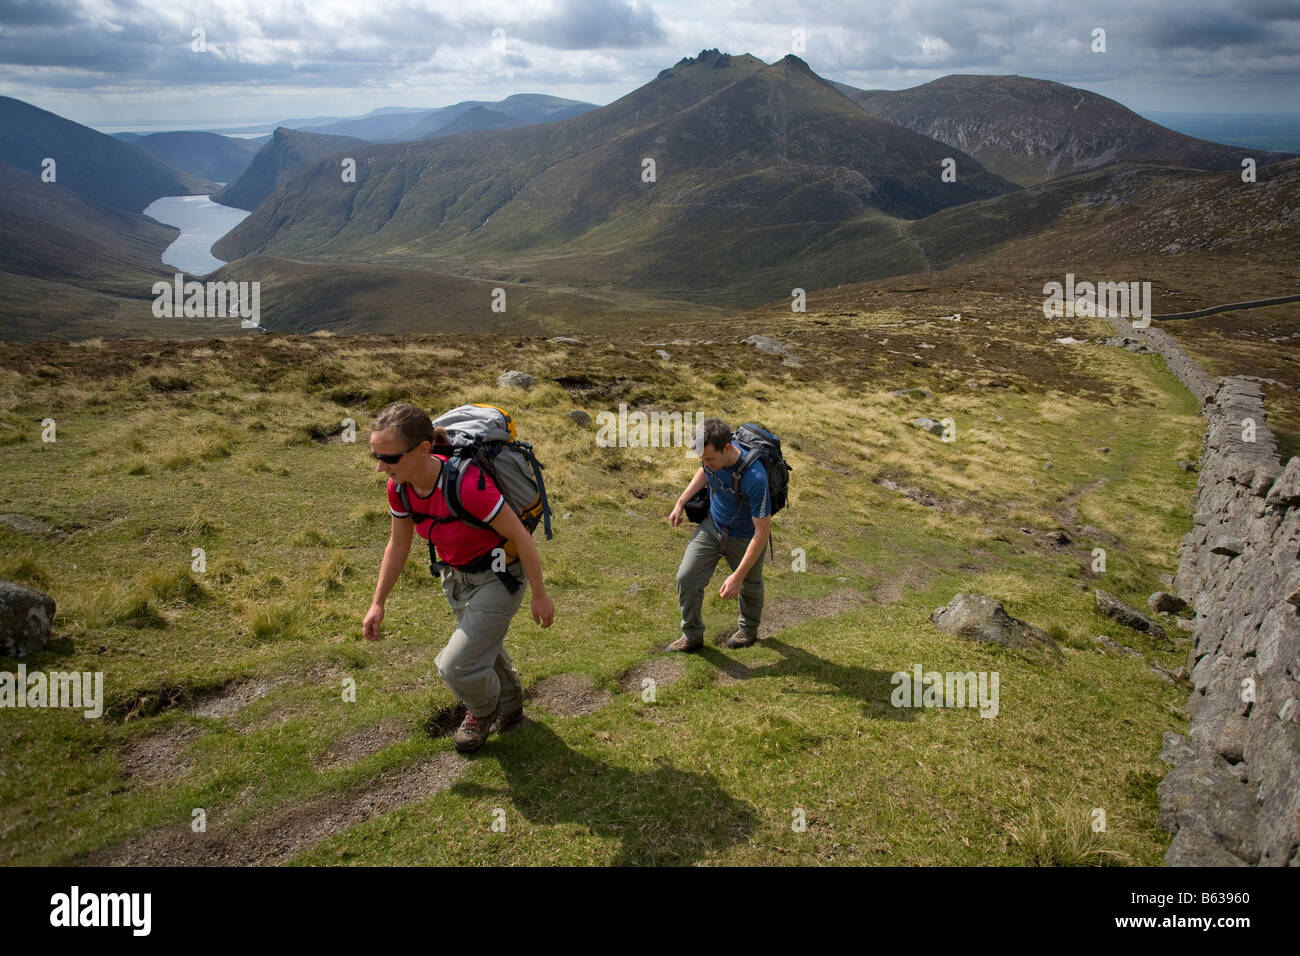 Les randonneurs au-dessus de la vallée silencieuse près du sommet des montagnes de Mourne, Slievenaglogh, comté de Down, Irlande du Nord, Royaume-Uni. Banque D'Images